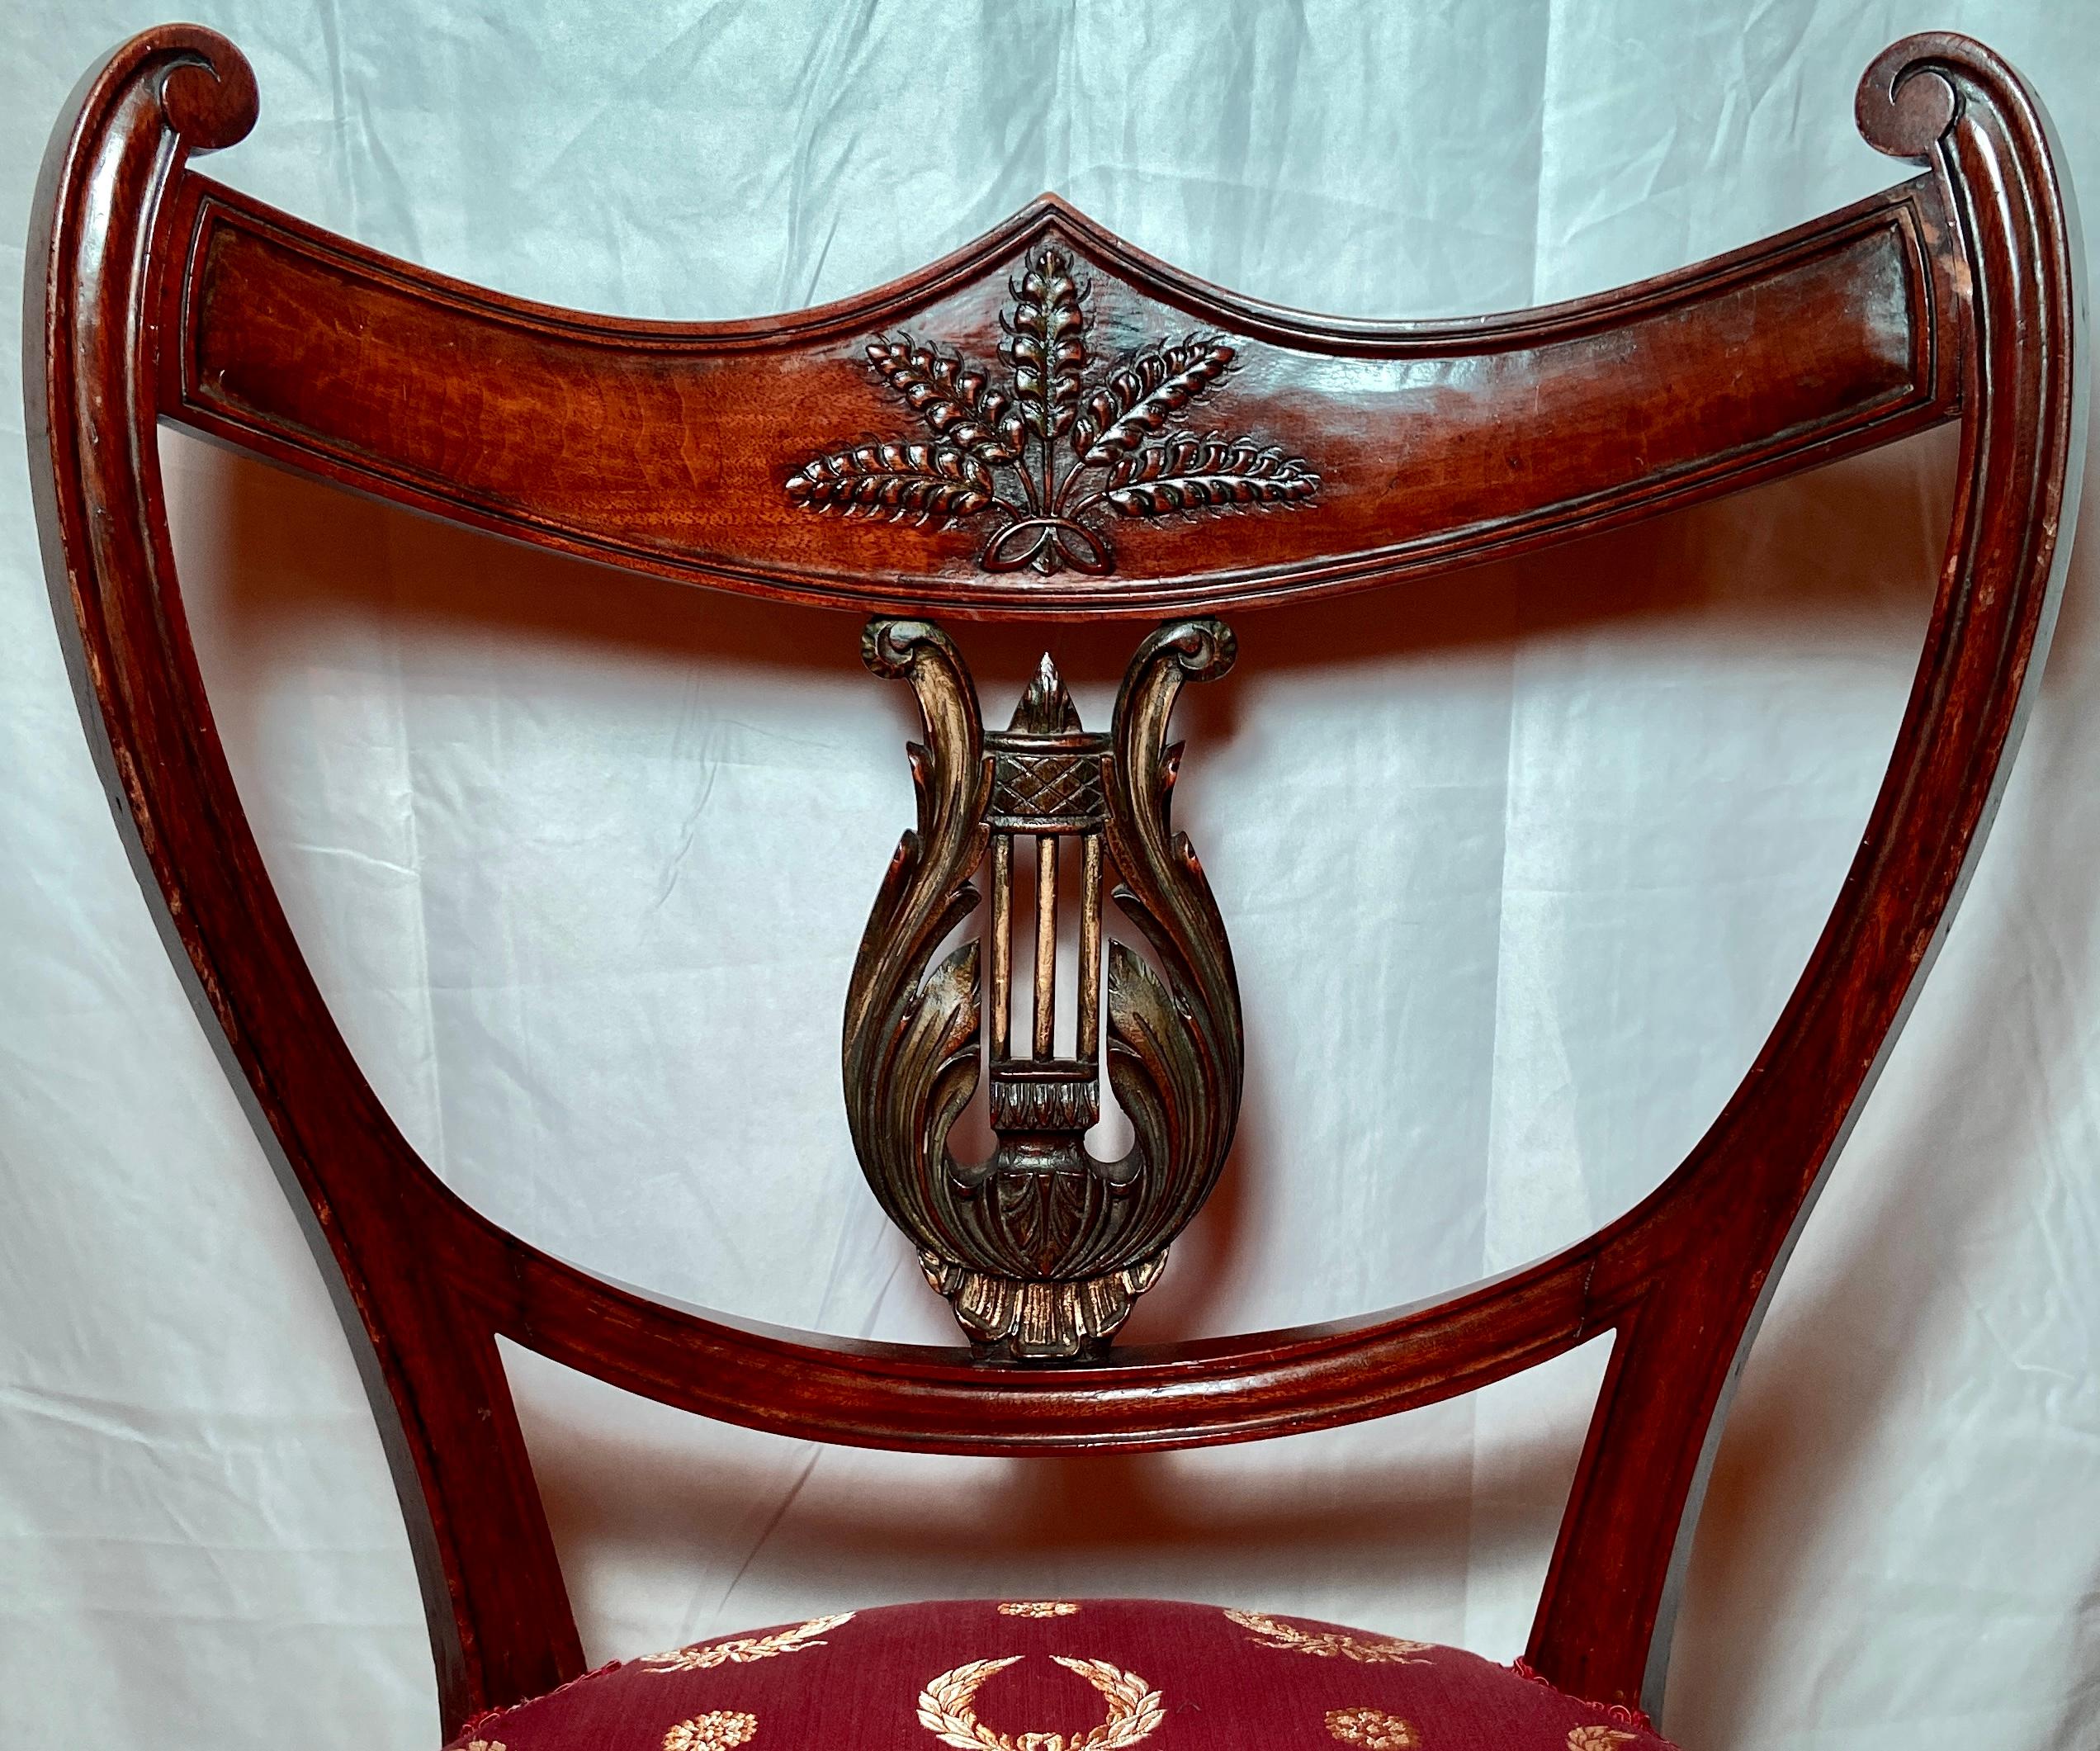 Paar antike englische Regency-Mahagoni-Stühle, ca. 1820-1830.  Schöne Linien und Details mit neuen roten und goldenen Seidenbezügen.